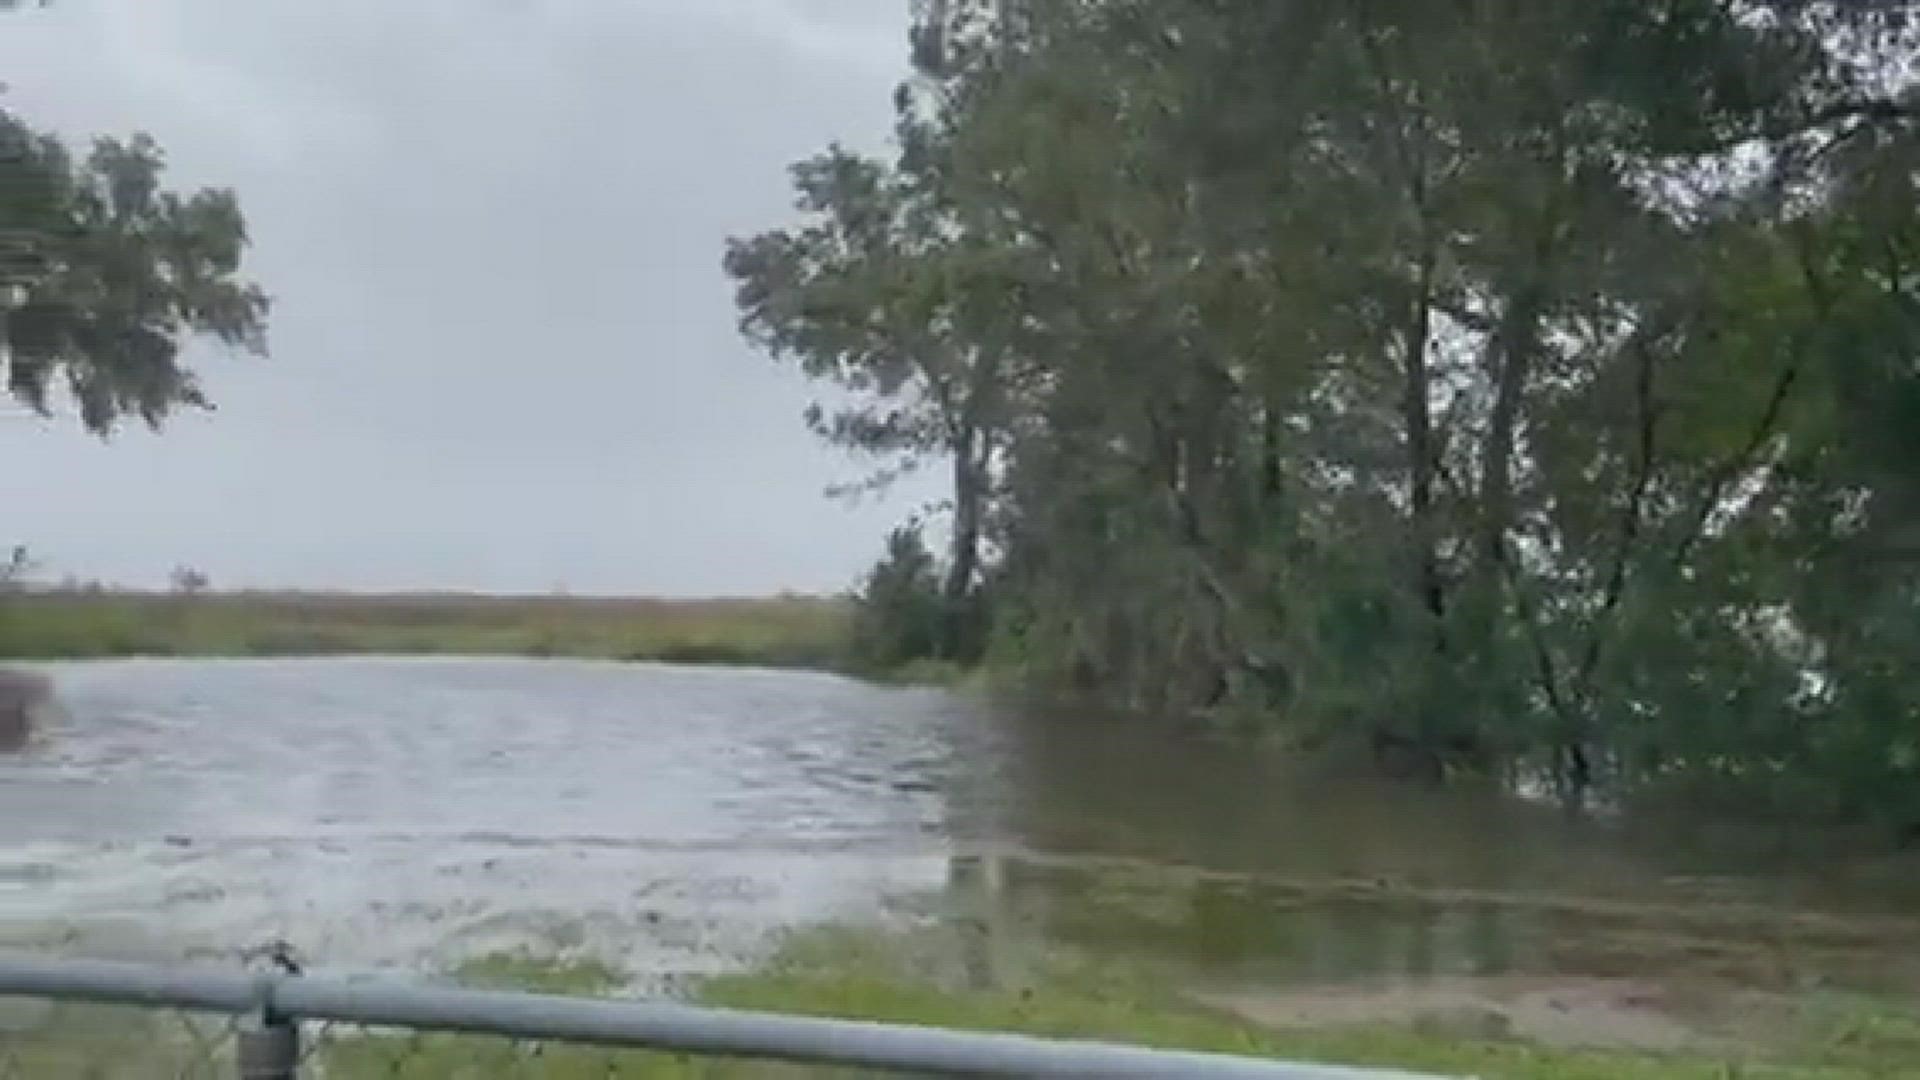 Nicole flooding on the marsh 3 hours after high tide | firstcoastnews.com